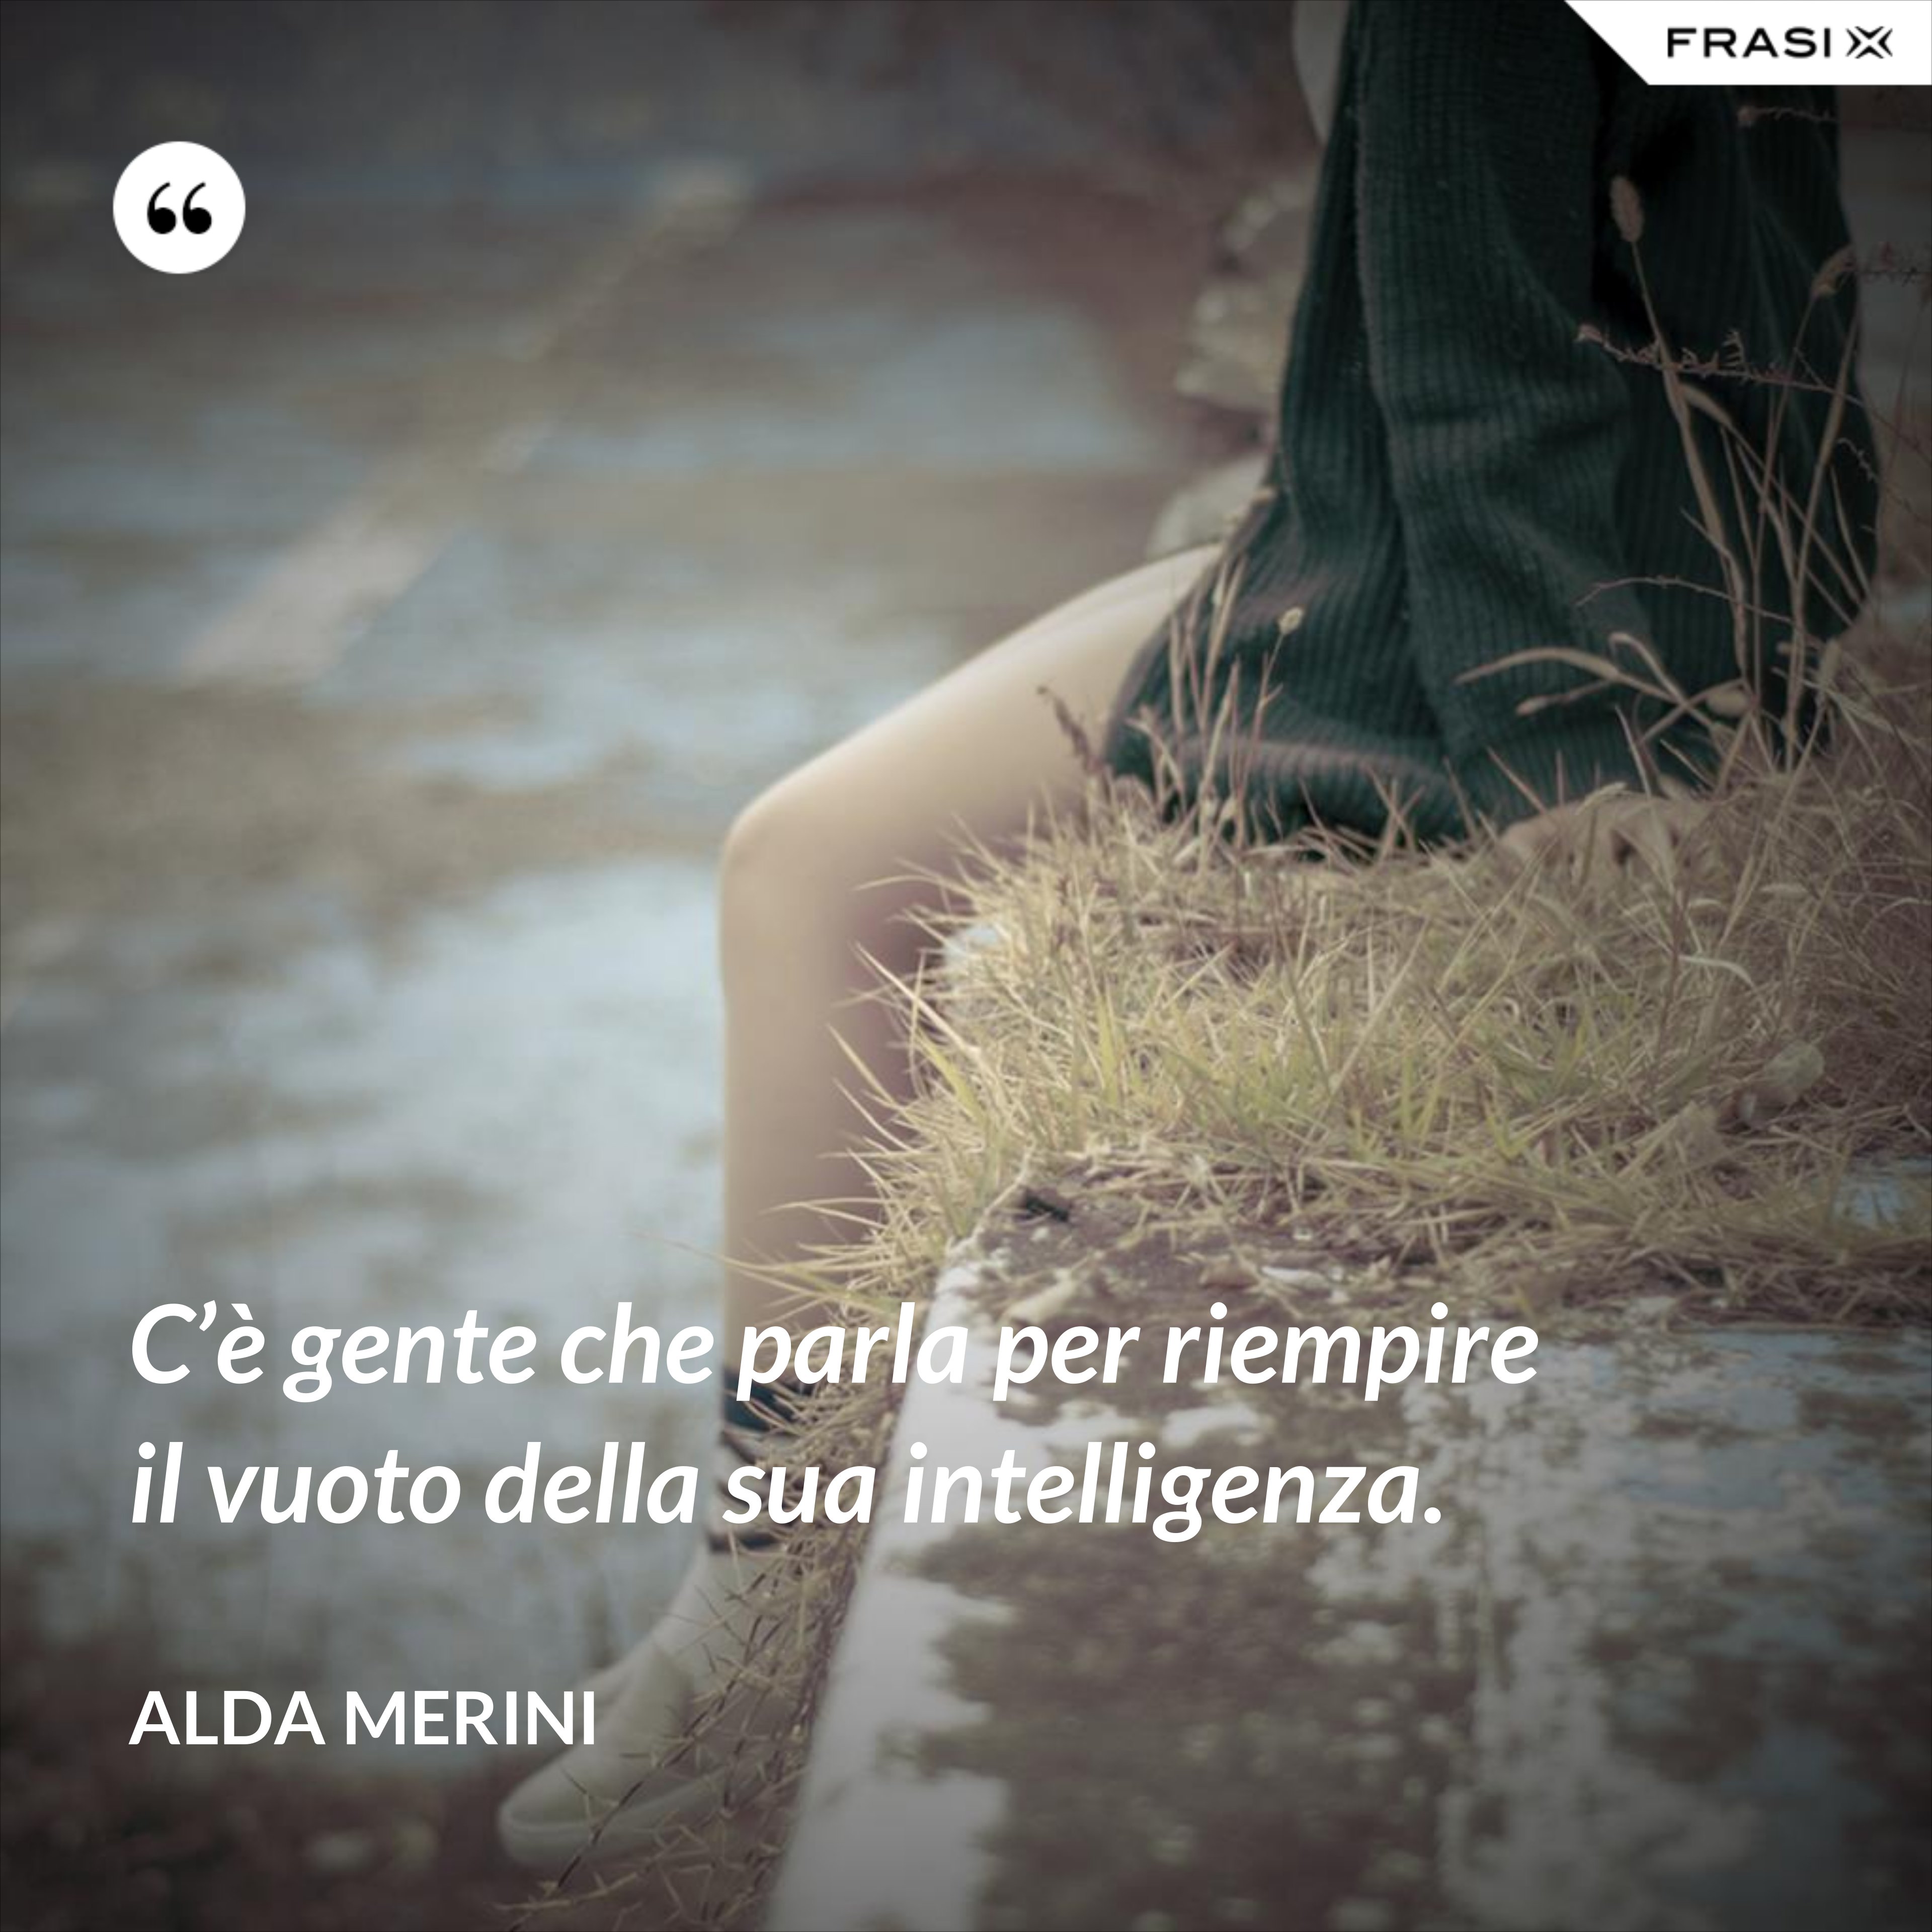 C’è gente che parla per riempire il vuoto della sua intelligenza. - Alda Merini